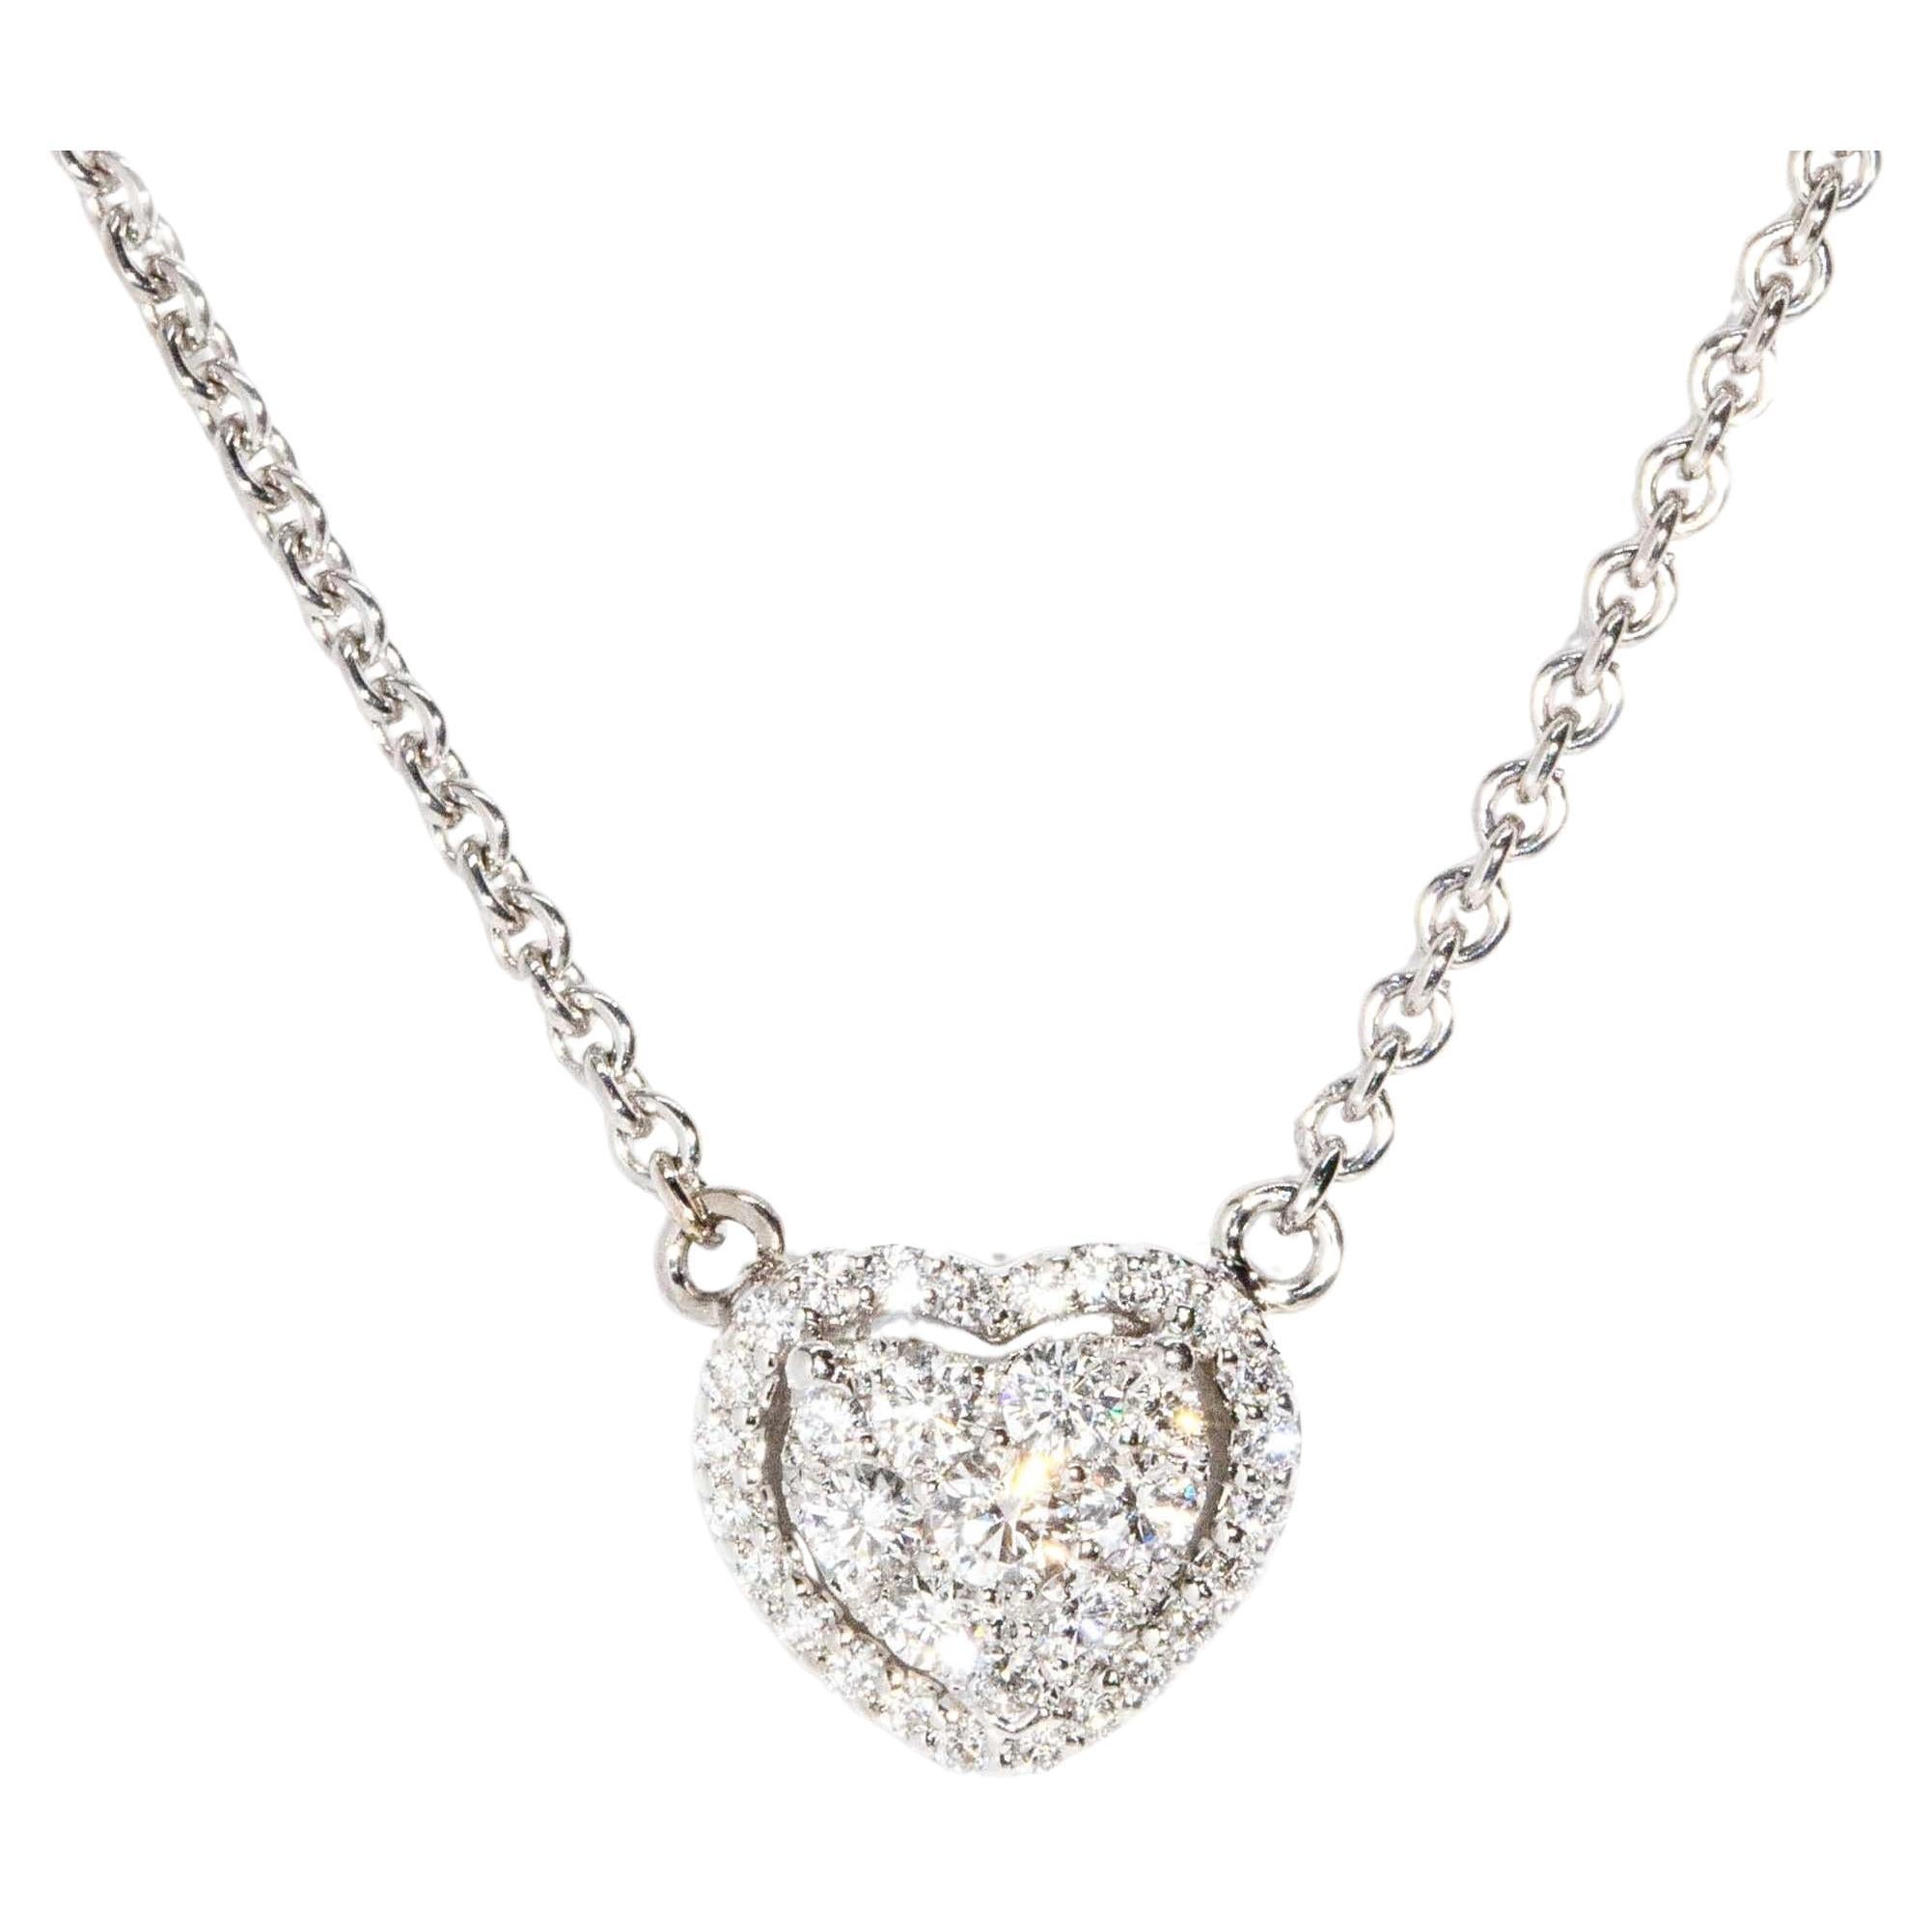 Contemporary Brilliant Diamond Heart Pendant & Cable Chain 18 Carat White Gold